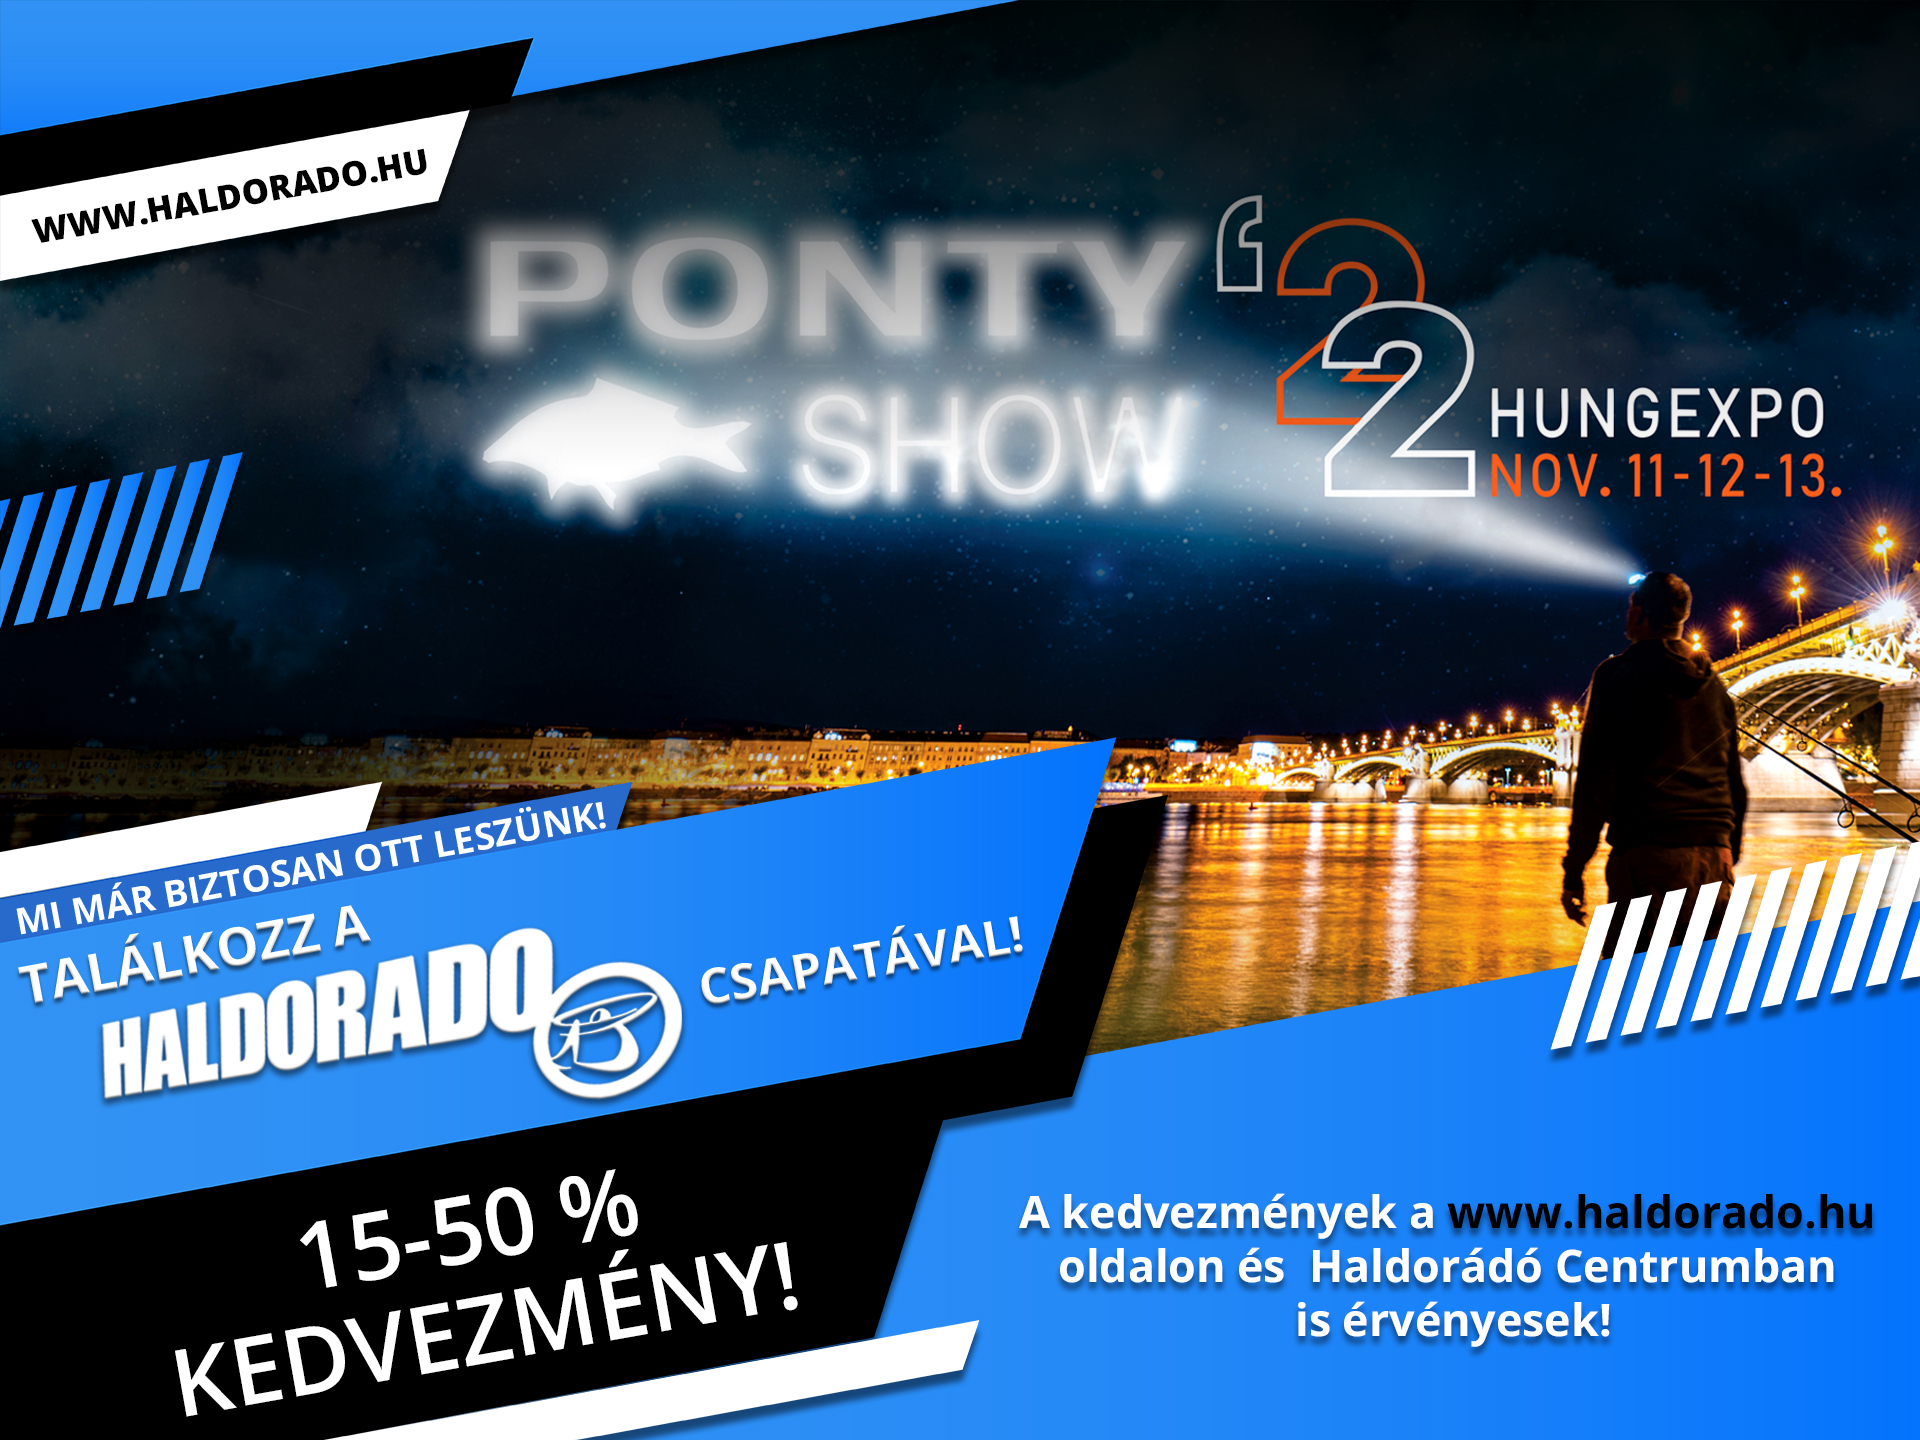 A PontyShow 2022-re készülünk!